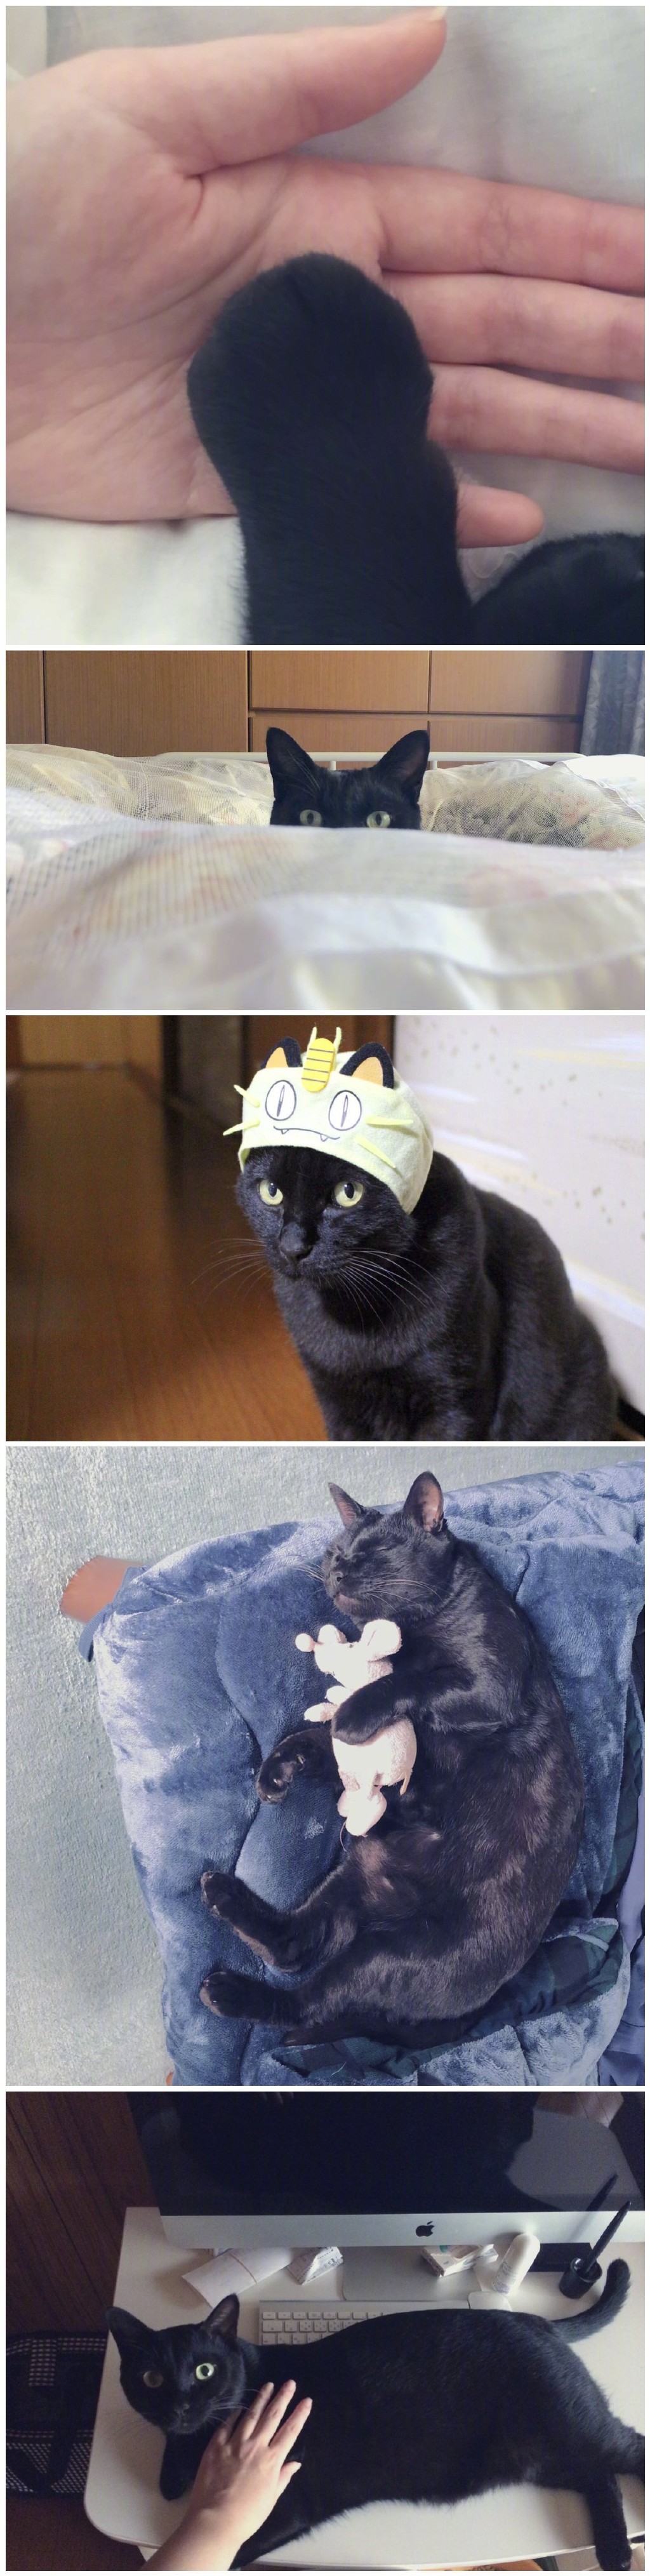 日本一位网友说，自家猫猫过于擅长脑补，总会误解自己的意思...谁不想被这样误解一次呢